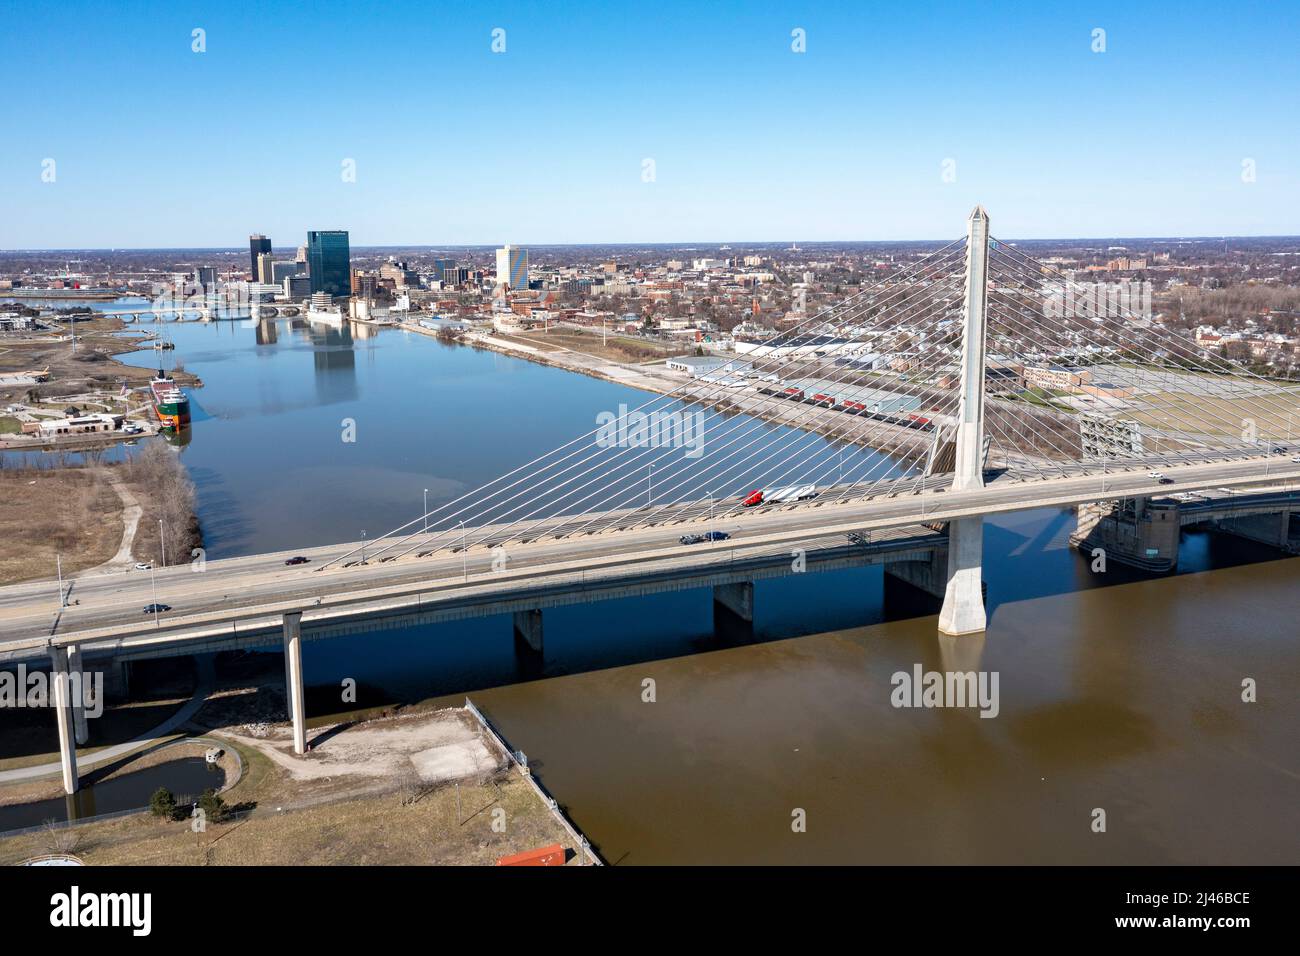 Toledo, Ohio - il ponte Veterans Glass City Skyway porta l'Interstate 280 sul fiume Maumee. Il centro di Toledo è in lontananza. Noi cinque lavoratori Foto Stock